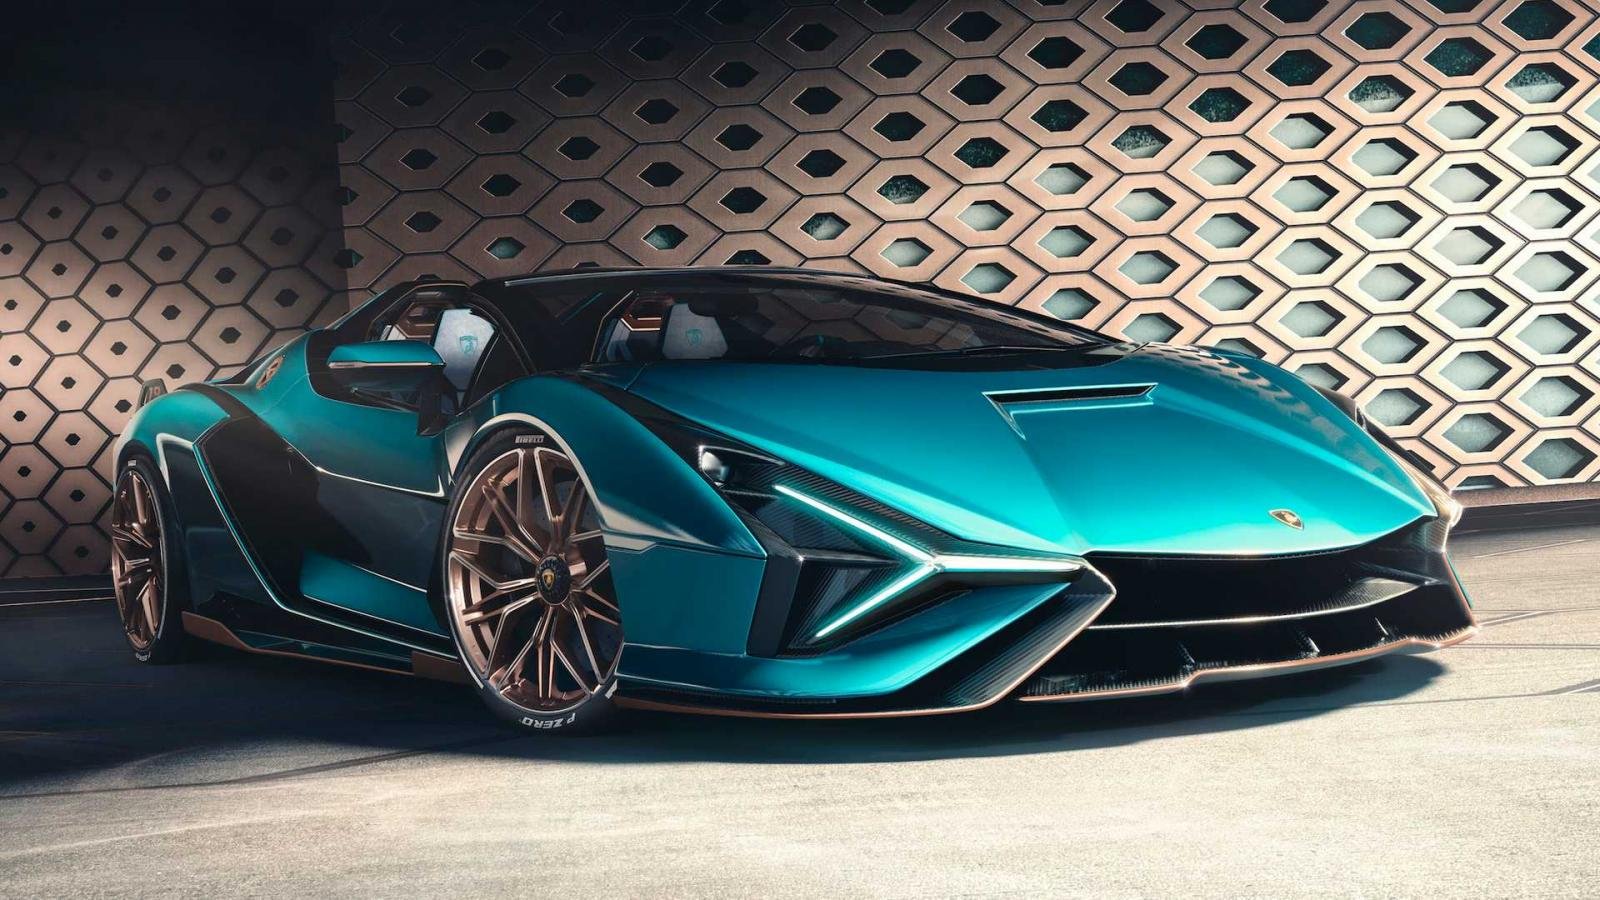 Siêu xe thể thao mui trần Lamborghini Sián Roadster là sự kết hợp hoàn hảo giữa công nghệ và thiết kế tuyệt đẹp. Để có được những hình ảnh đầy ấn tượng của dòng xe này, bạn nên xem ngay!